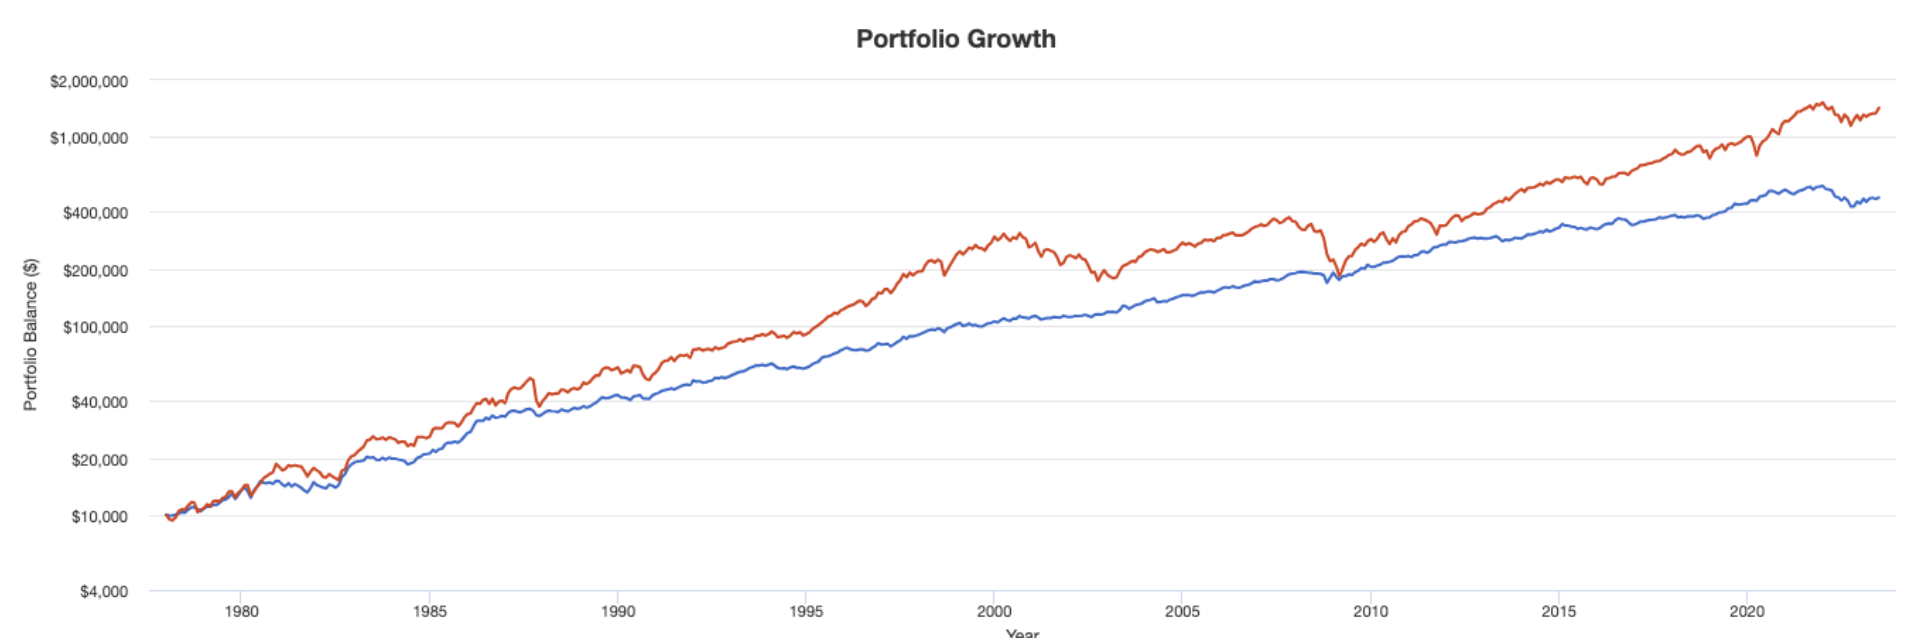 オールシーズンズポートフォリオと株式単体のリターンの比較